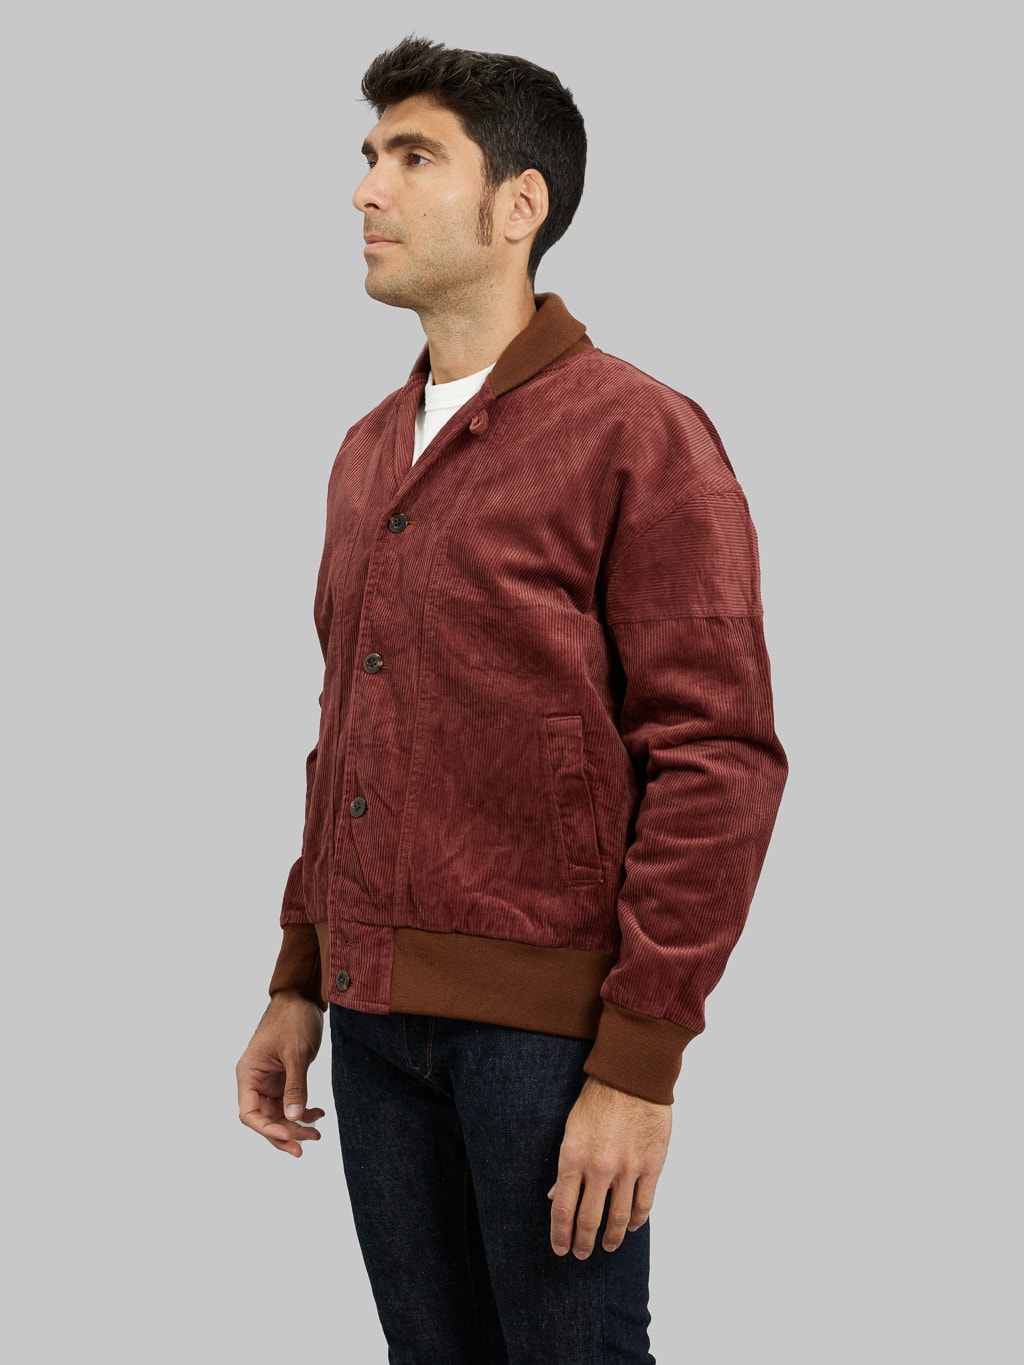 Tanuki Sazanami Corduro mud Dyed brown Jacket side fit